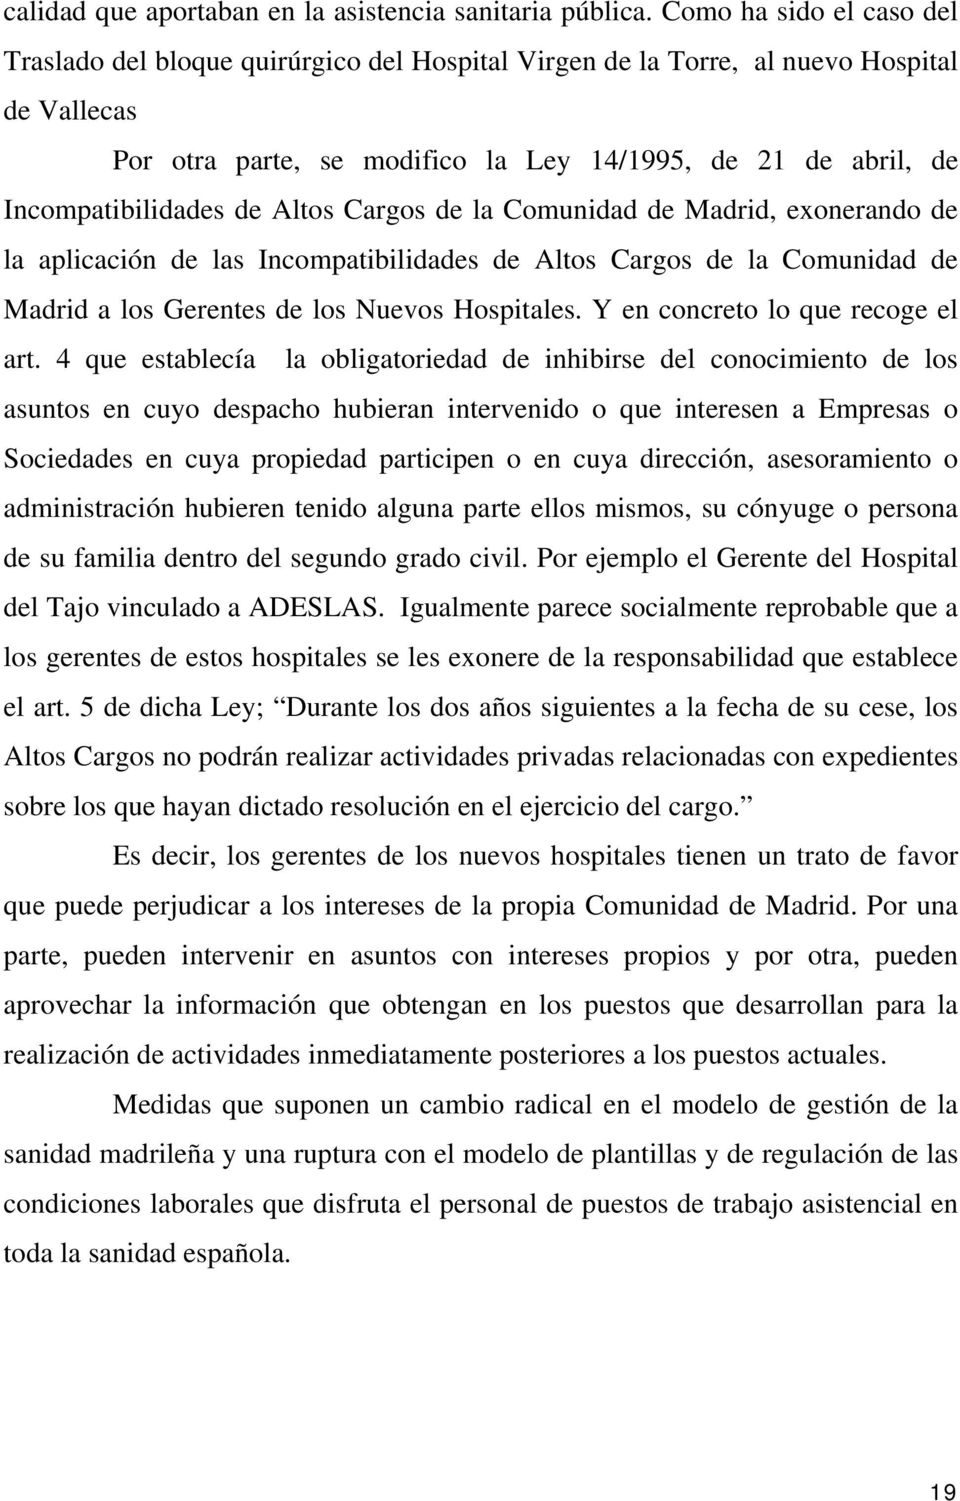 Incompatibilidades de Altos Cargos de la Comunidad de Madrid, exonerando de la aplicación de las Incompatibilidades de Altos Cargos de la Comunidad de Madrid a los Gerentes de los Nuevos Hospitales.